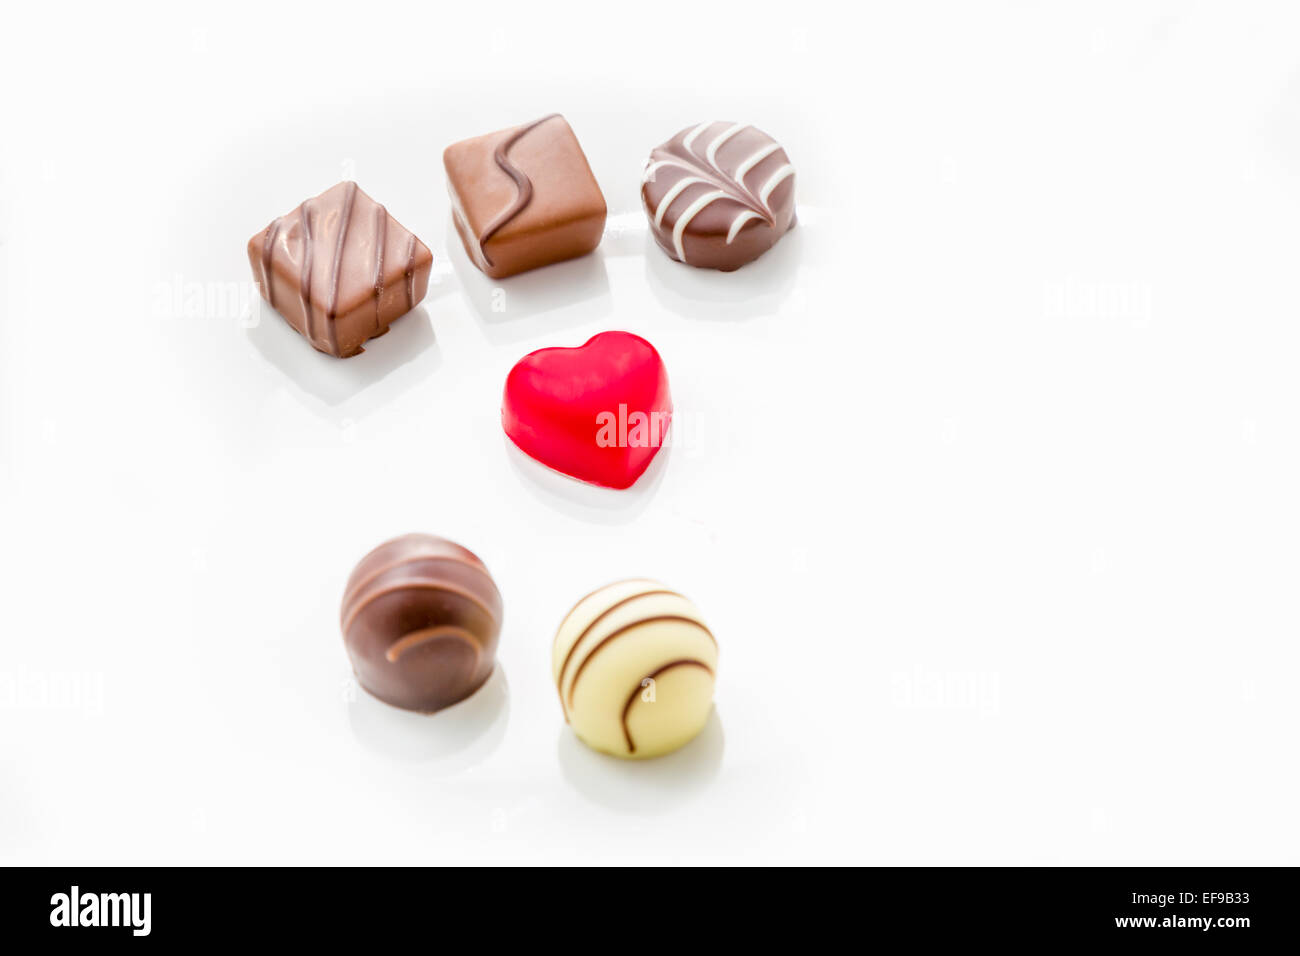 Rotes Herz geformt Schokolade auf einem weißen Teller mit Praline Schokolade oben und unten Stockfoto